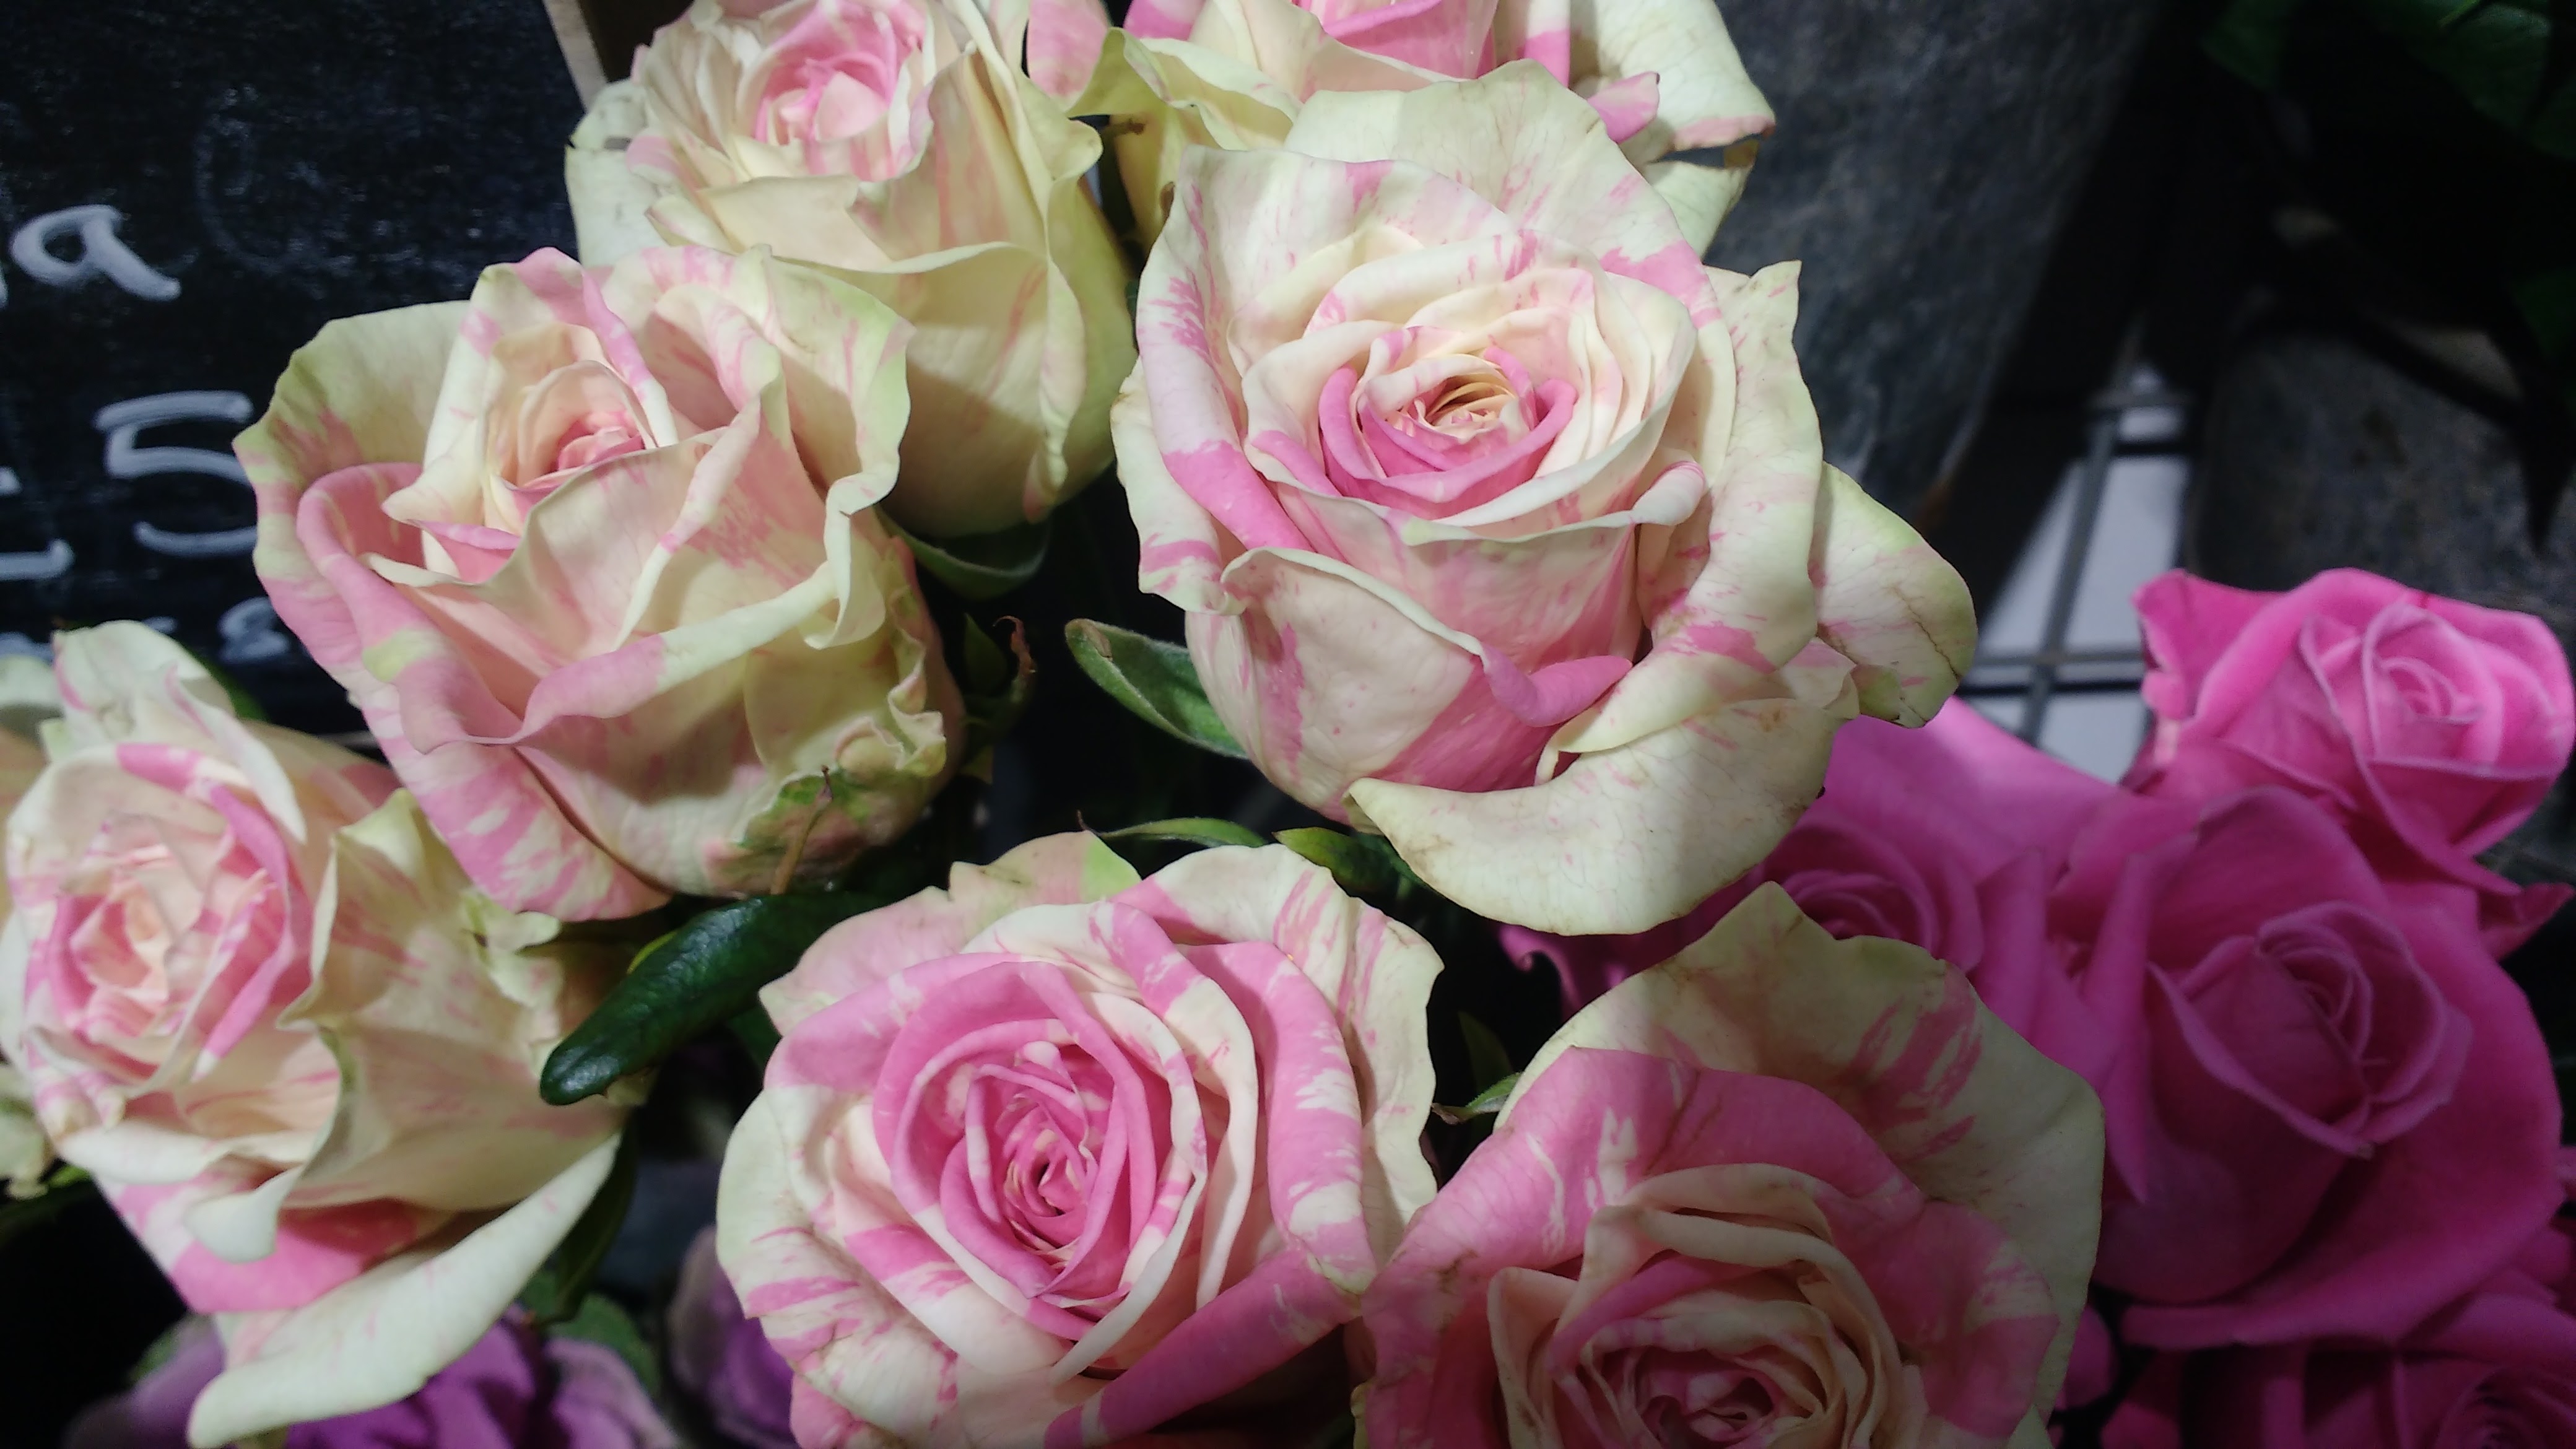 roses London Florist Shop EC1Y 1BE